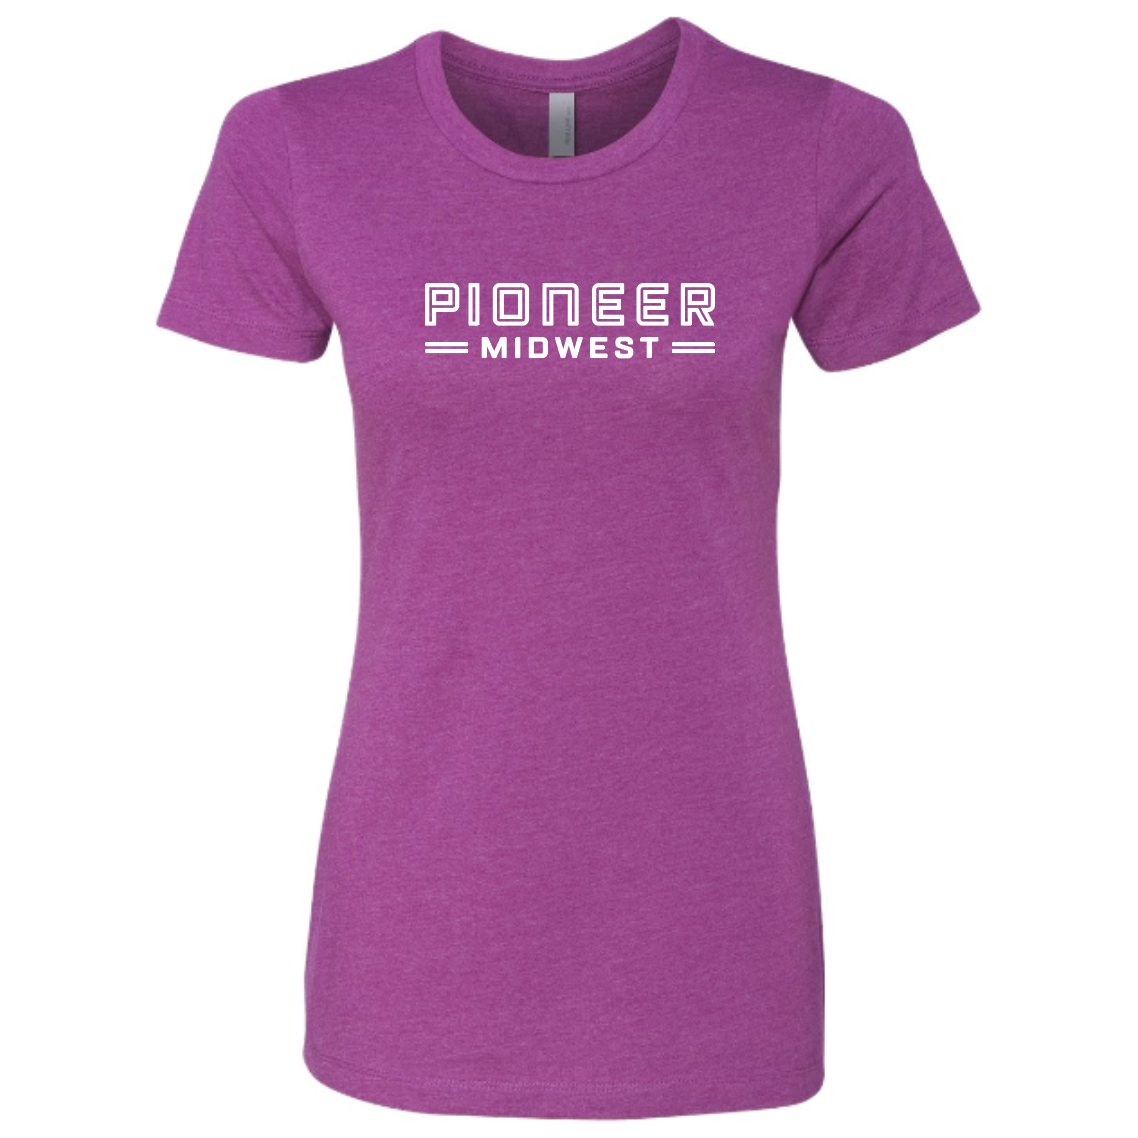 Pioneer Midwest Women's Purple T-Shirt